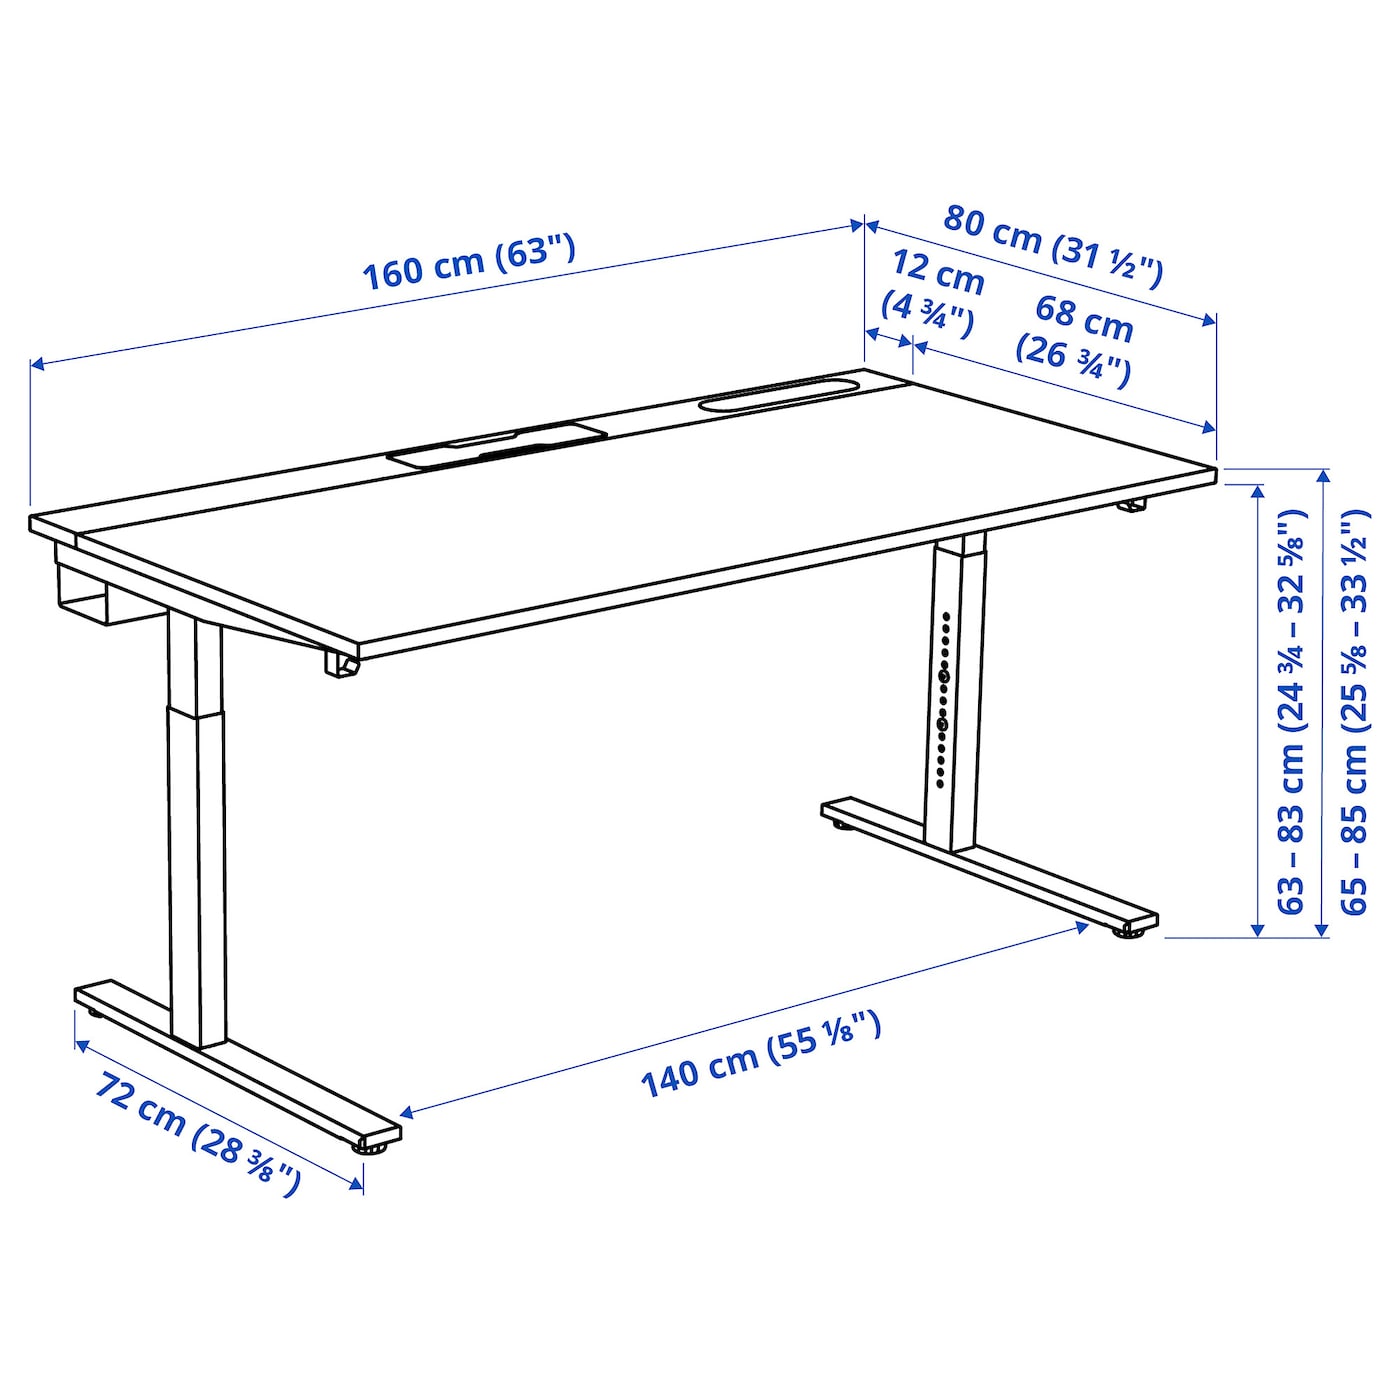 MITTZON desk oak veneer white - IKEA